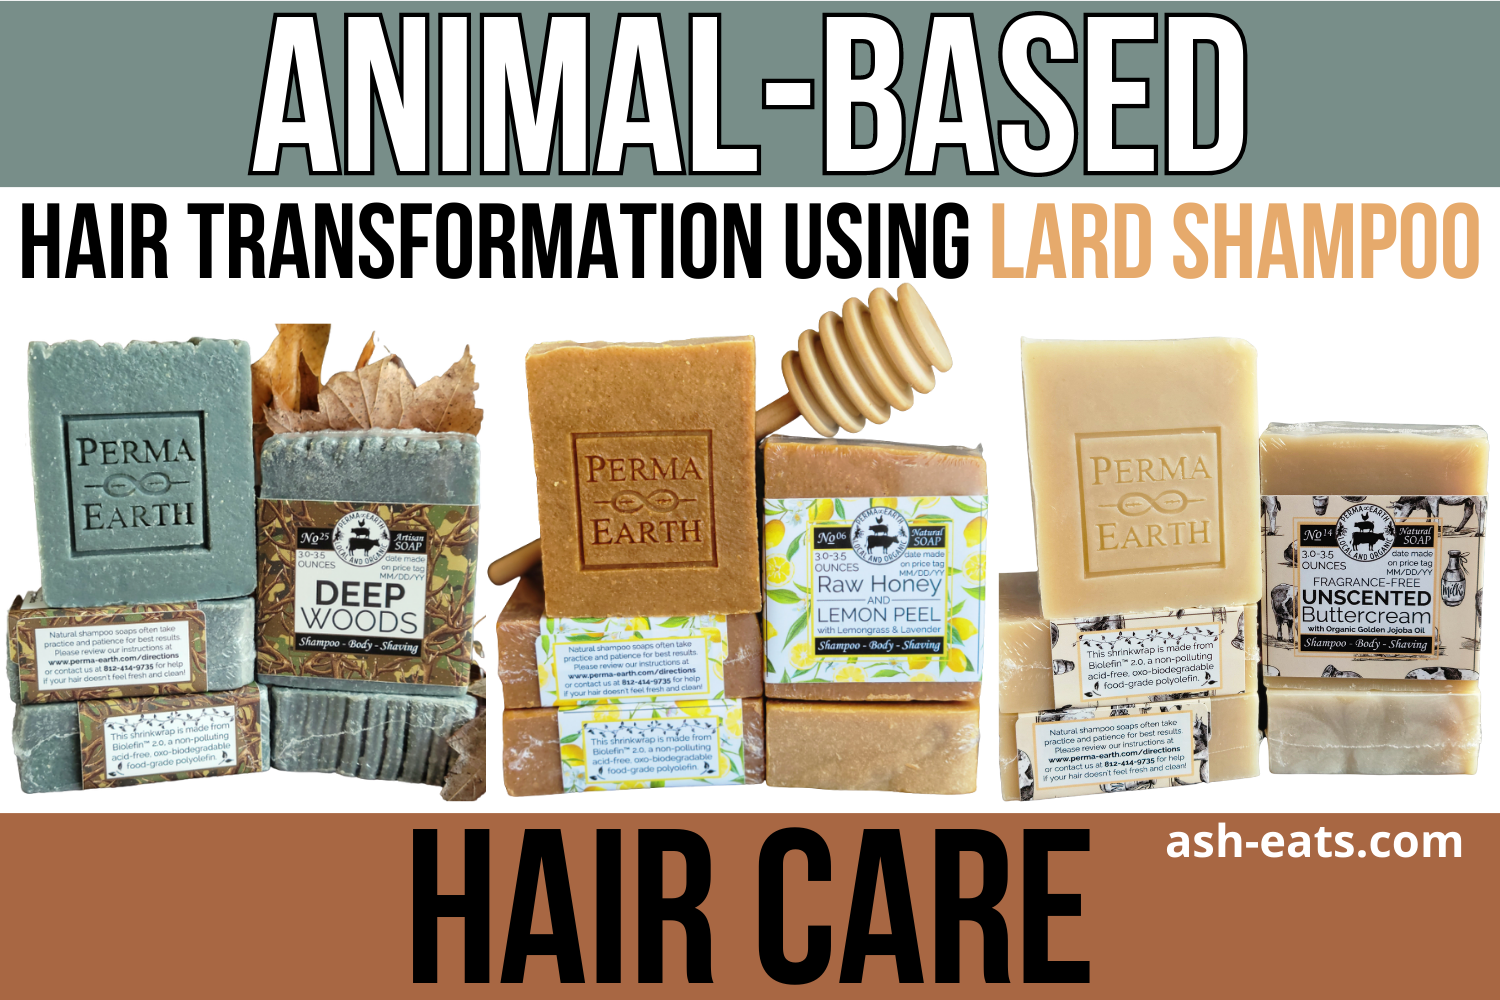 Animal-Based Hair Care: Transformation Hair Using Shampoo Lard